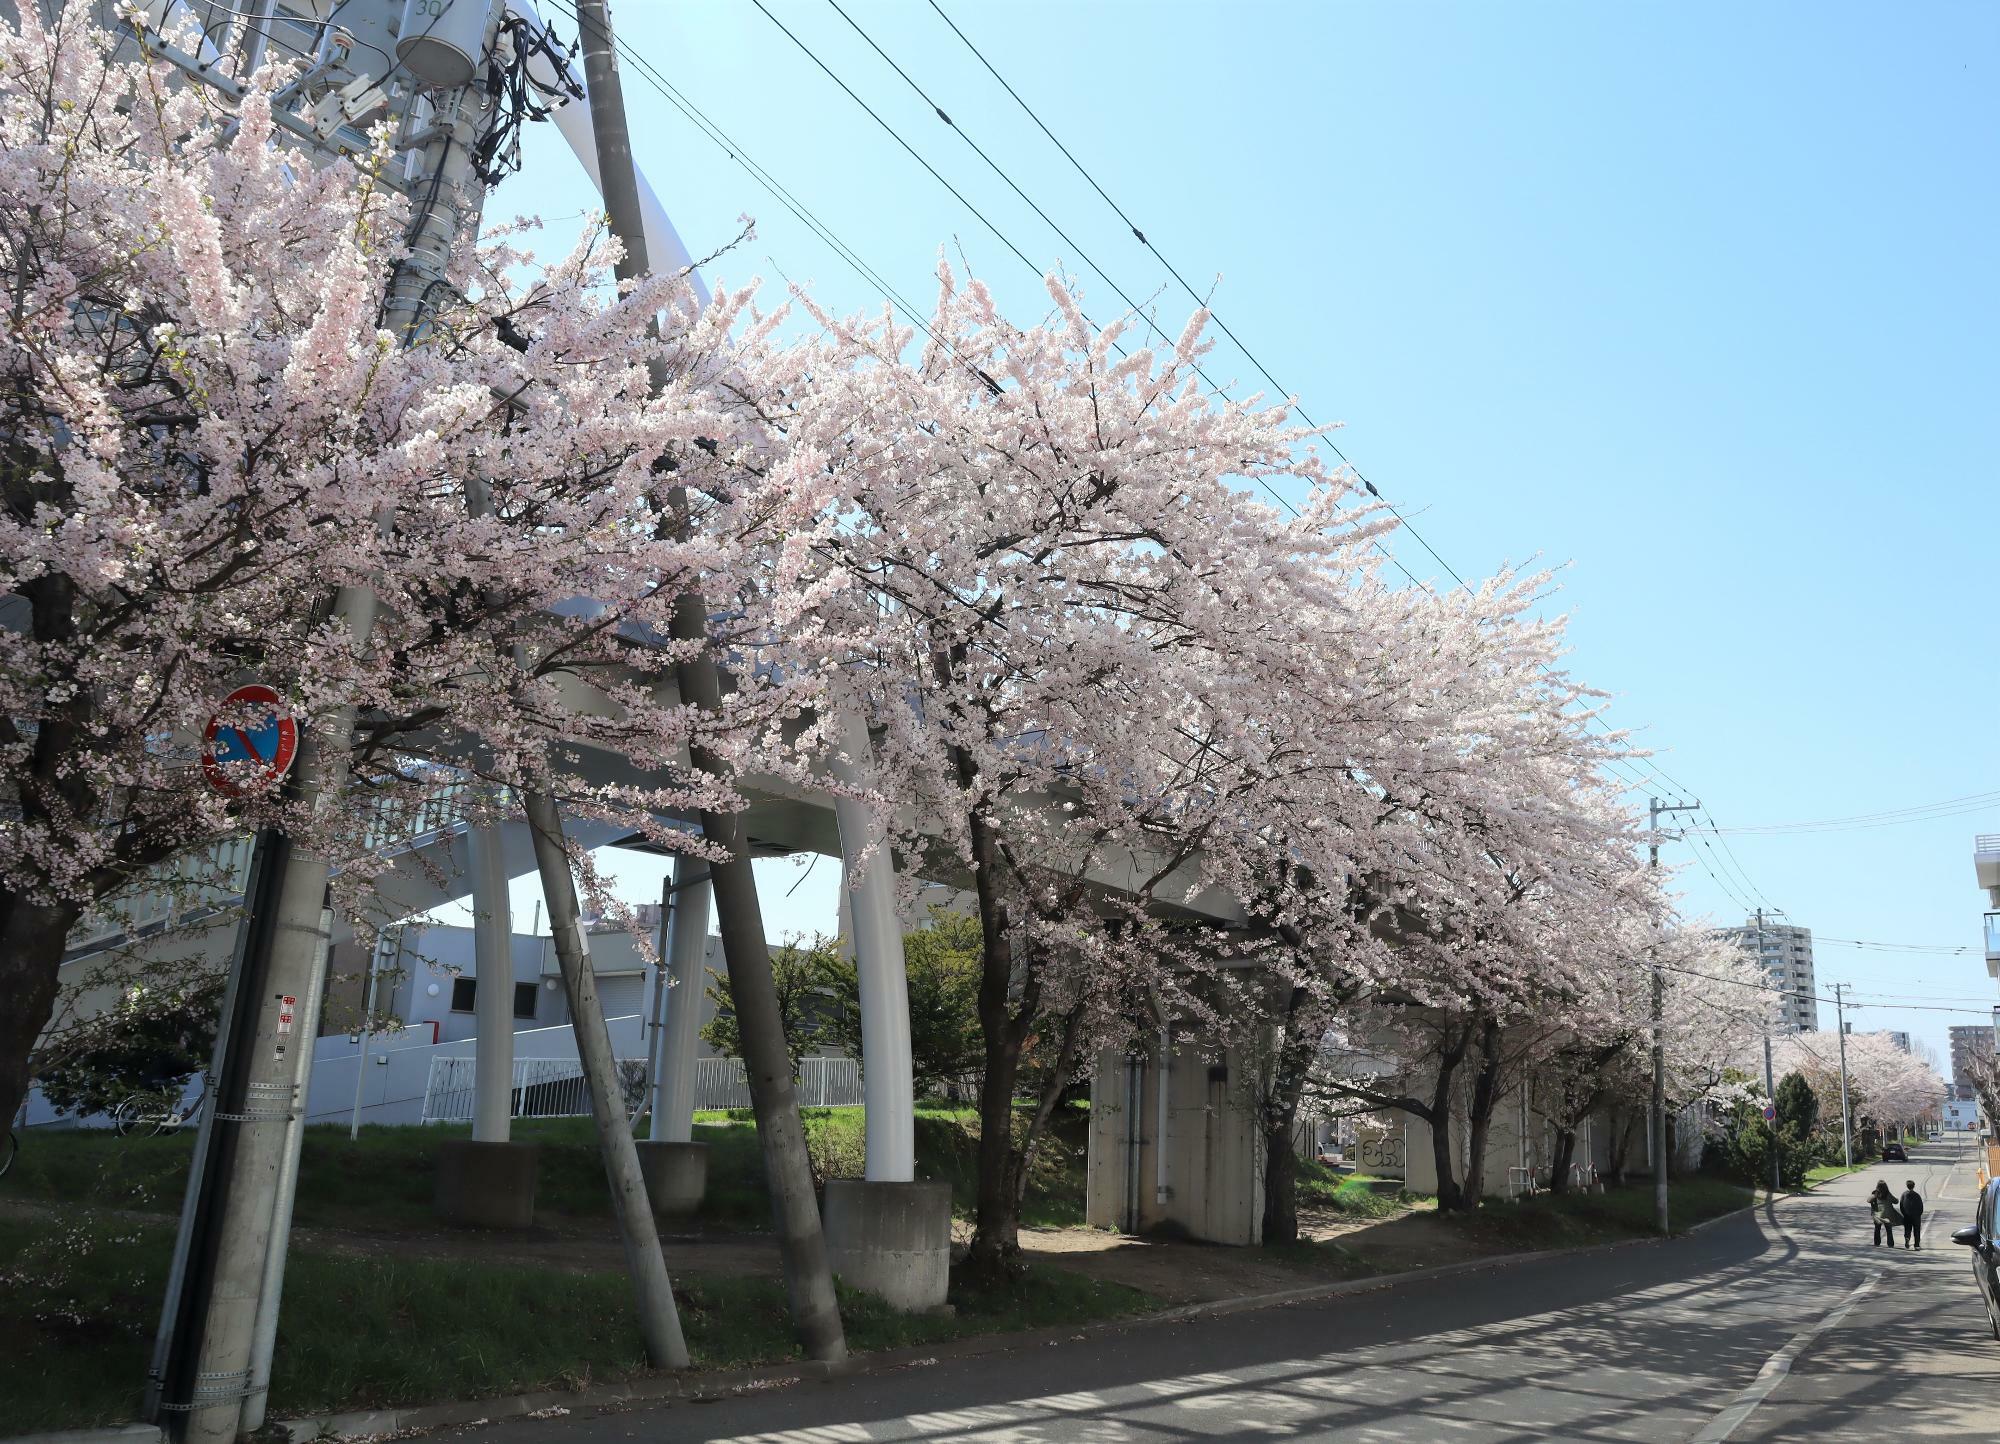 環状夢の橋に沿って桜並木が続いています。